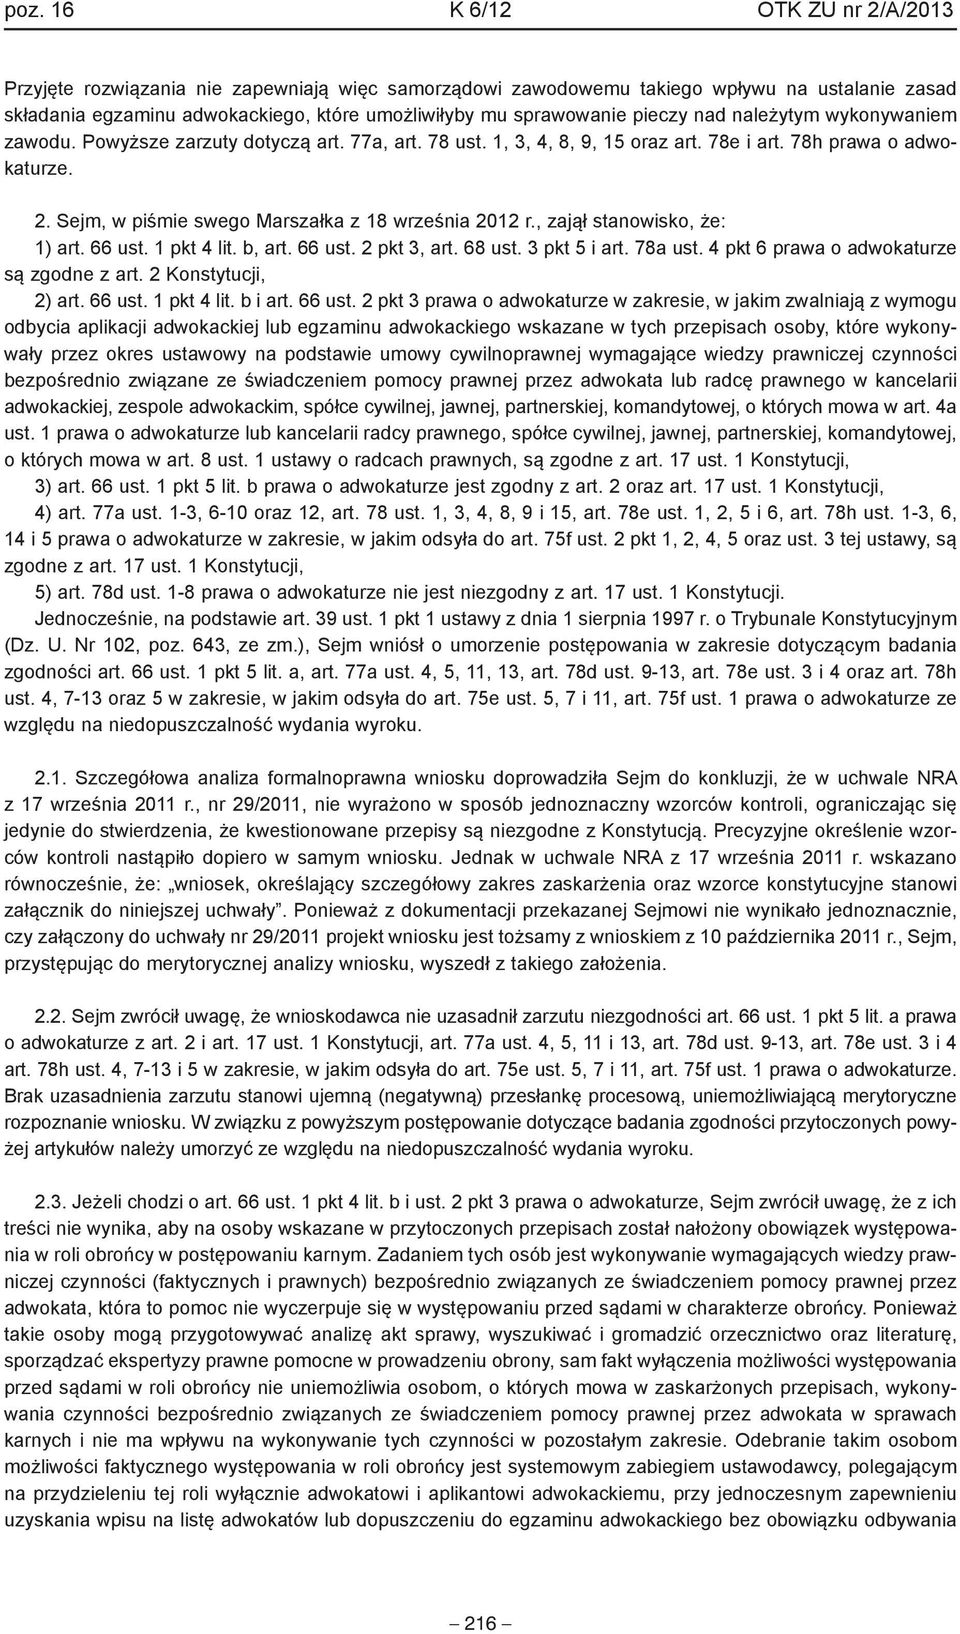 Sejm, w piśmie swego Marszałka z 18 września 2012 r., zajął stanowisko, że: 1) art. 66 ust. 1 pkt 4 lit. b, art. 66 ust. 2 pkt 3, art. 68 ust. 3 pkt 5 i art. 78a ust.